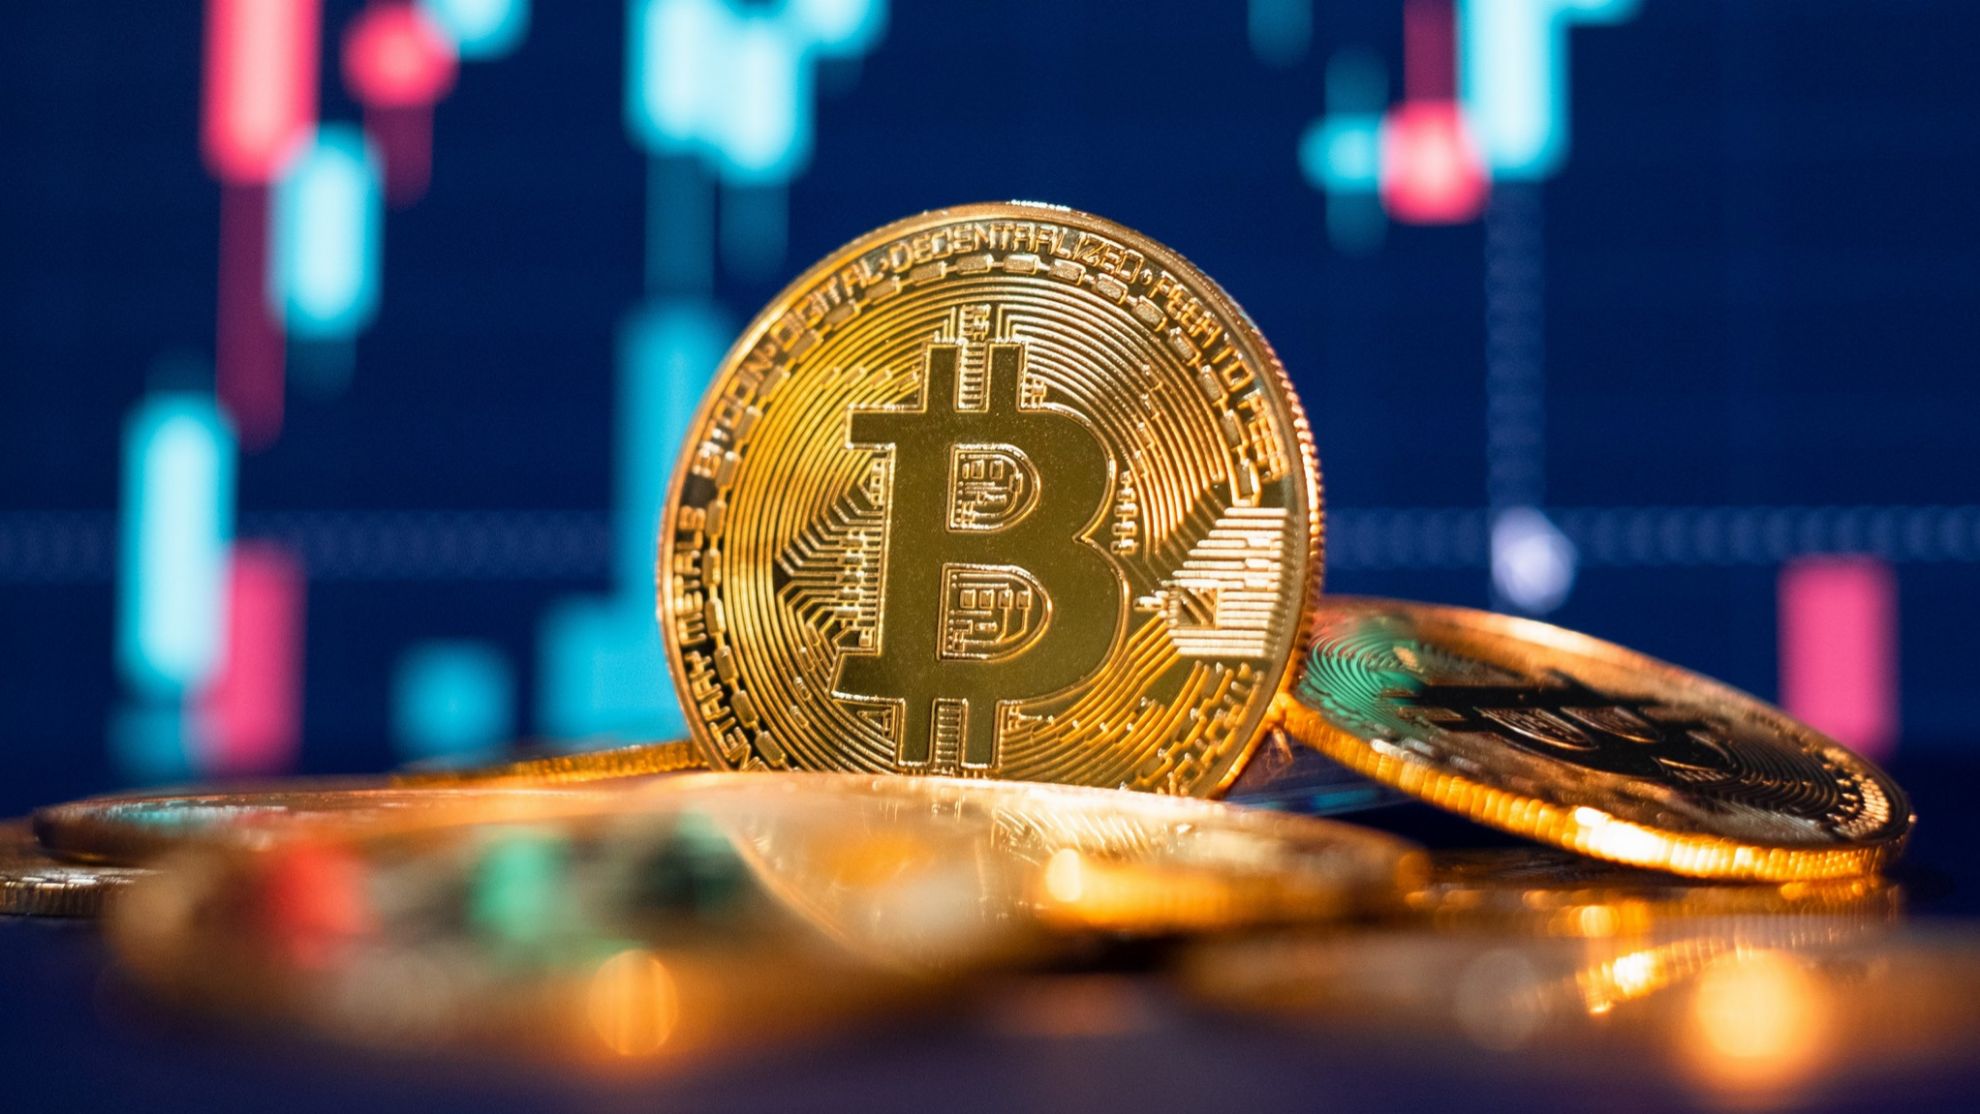 Why has crypto dropped bitcoin vs gold